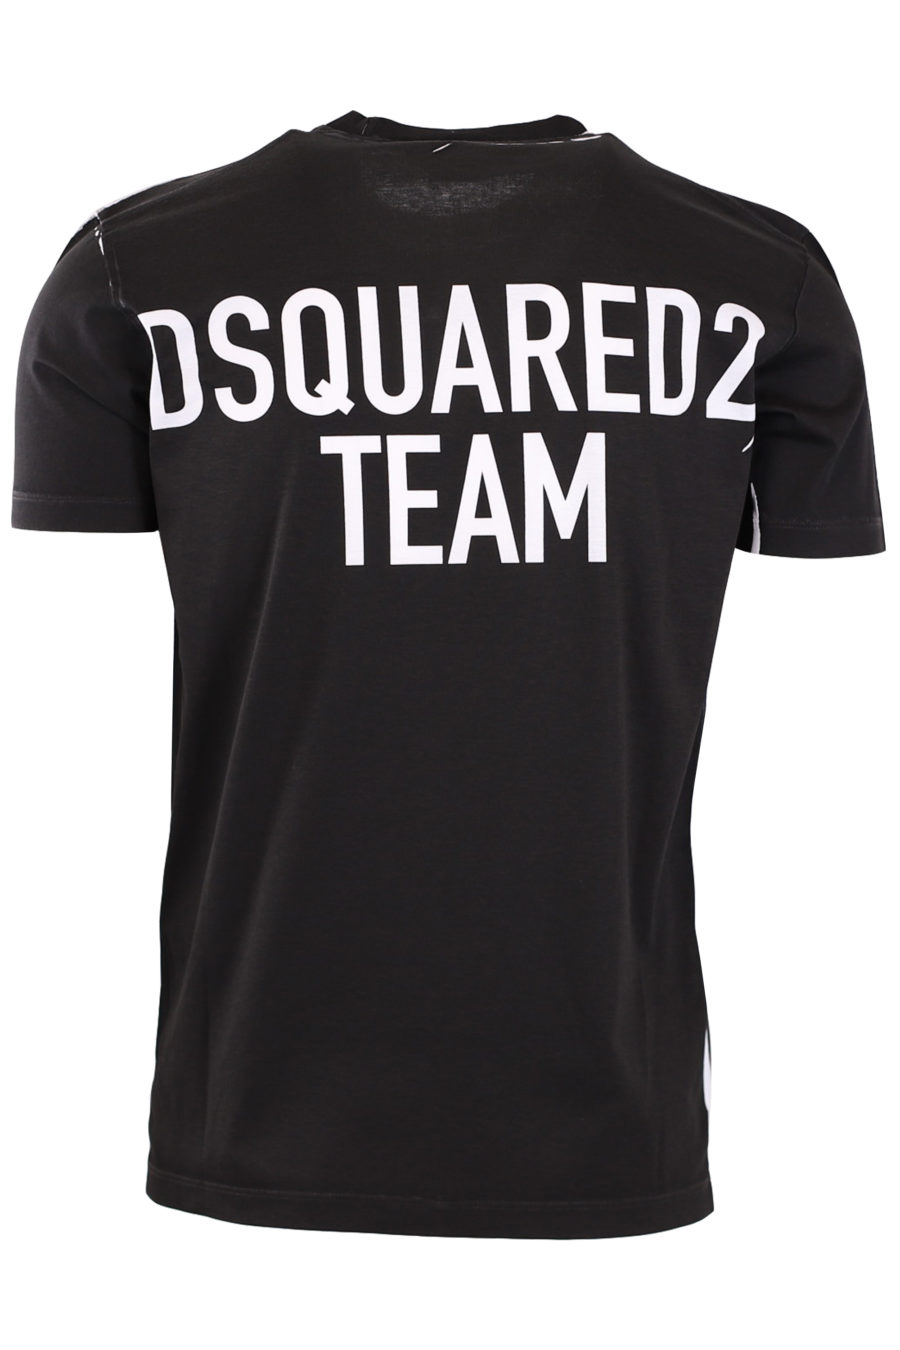 Camiseta negra con escrito "Dsquared2 team" - 670bfdb17c0110044e1b27e967f45fcb45c5306f